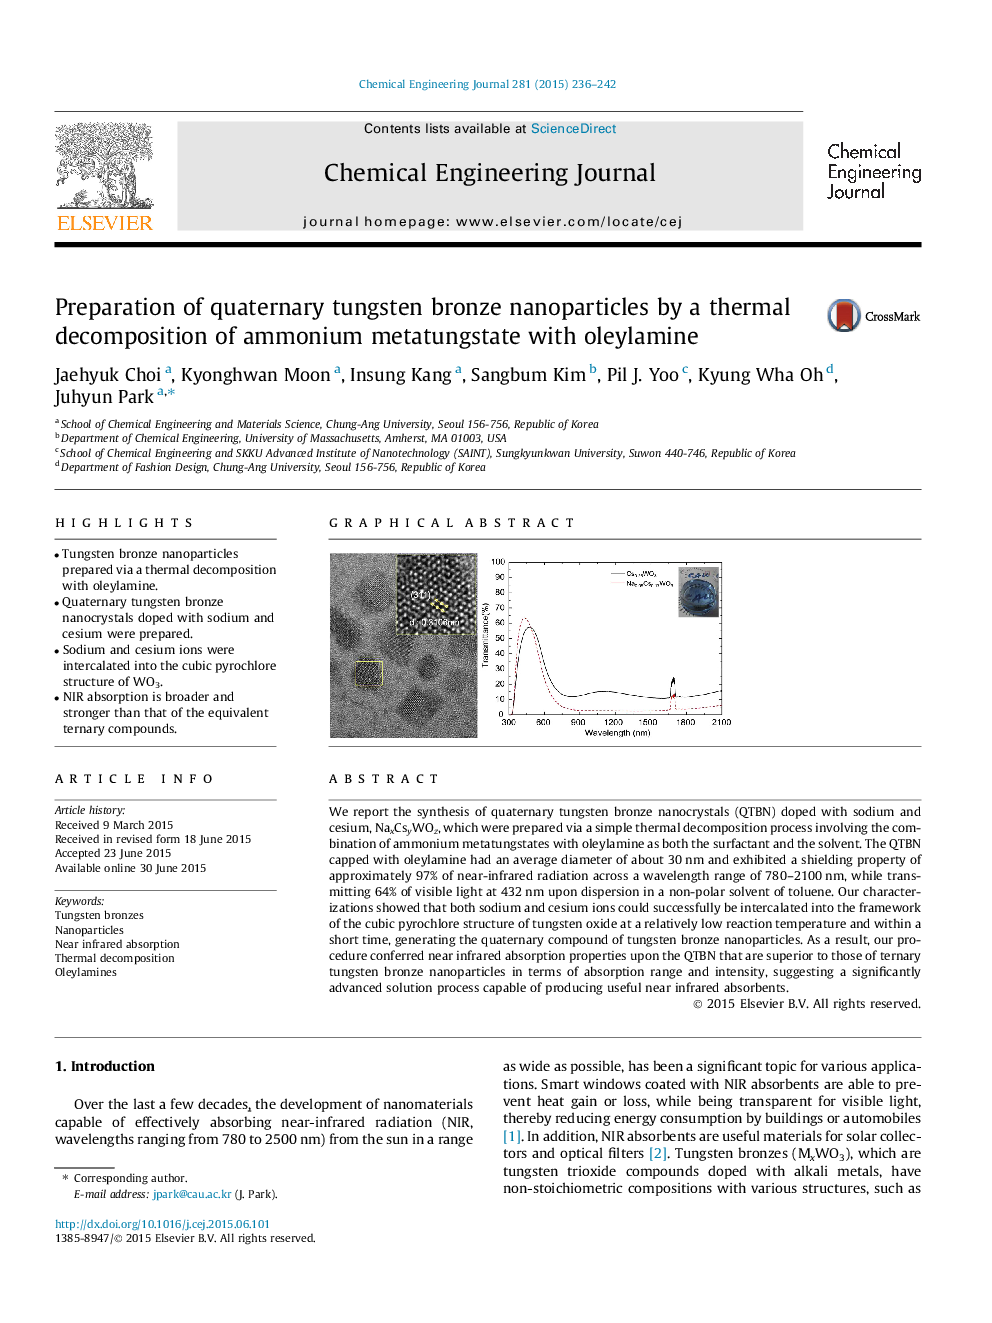 تهیه نانوذرات برنزی تنگستن چهار تایی توسط تجزیه حرارتی متاتورنگات آمونیوم با اتیلامین 